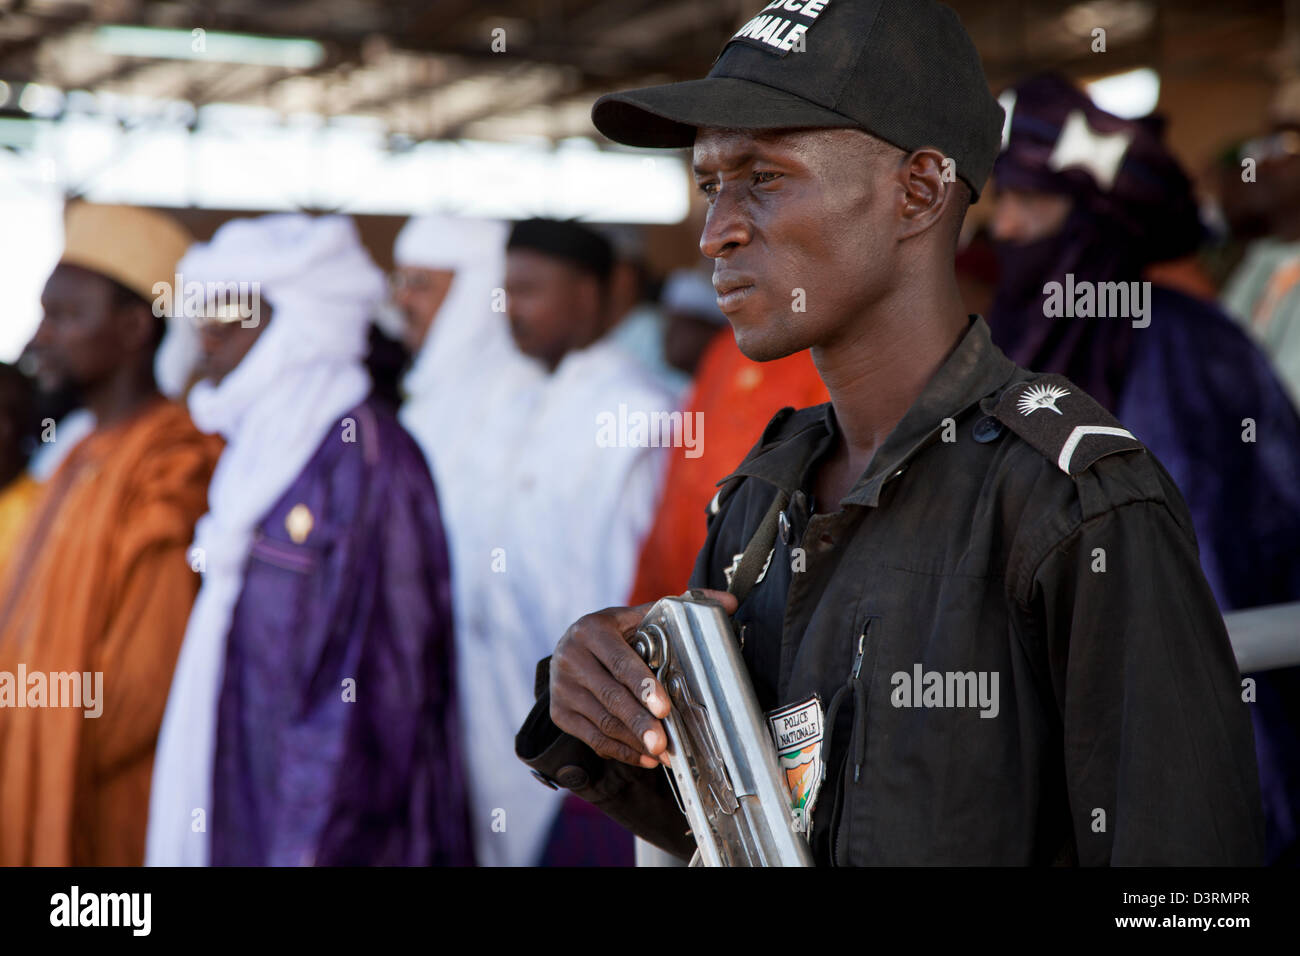 Garde militaire veille sur les dignitaires au nomad Gerewol Festival dans le nord du Niger Banque D'Images